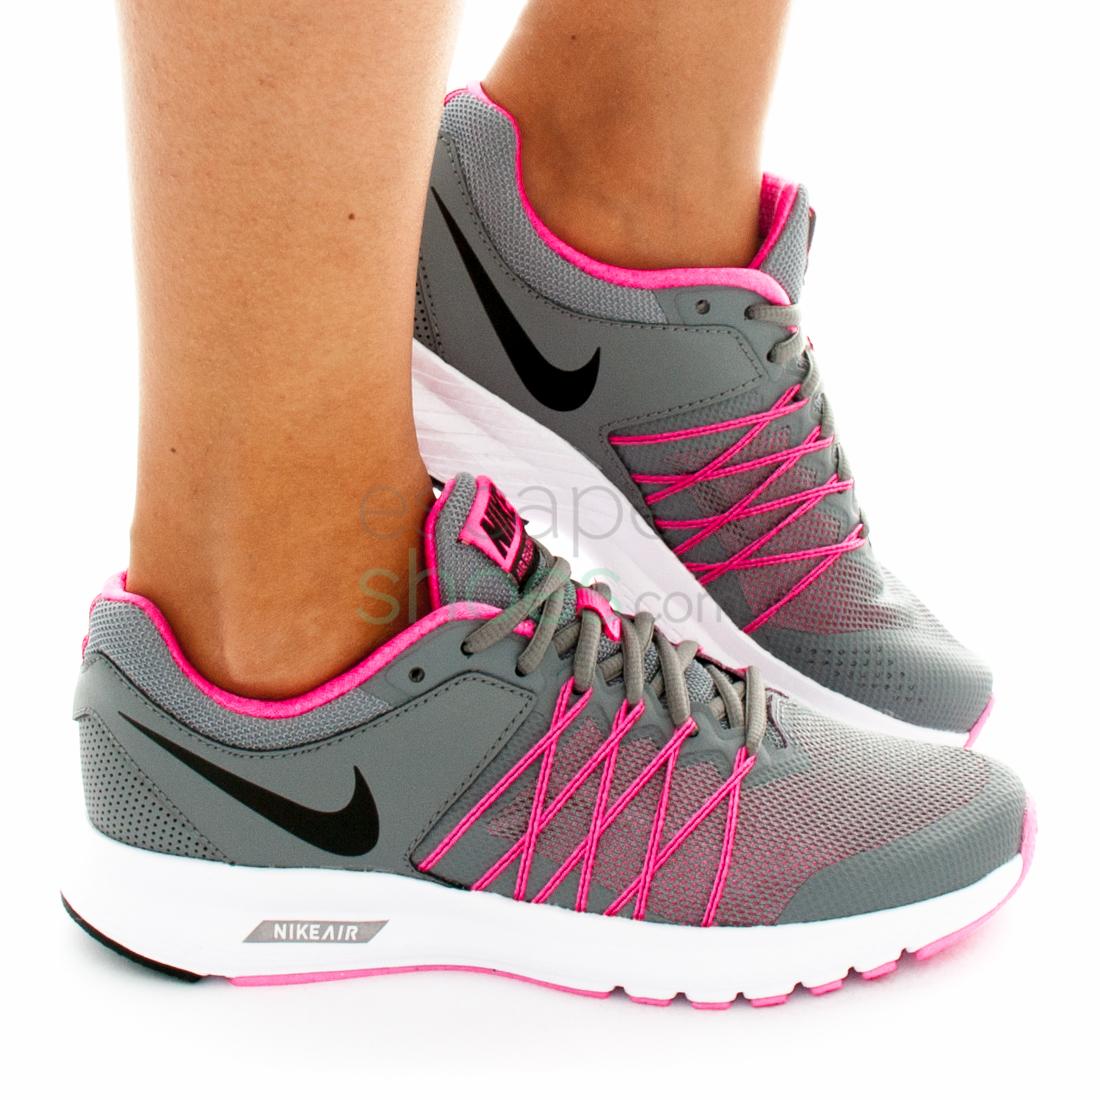 Sneakers Air Relentless 6 Cool Grey Pink 843882 002